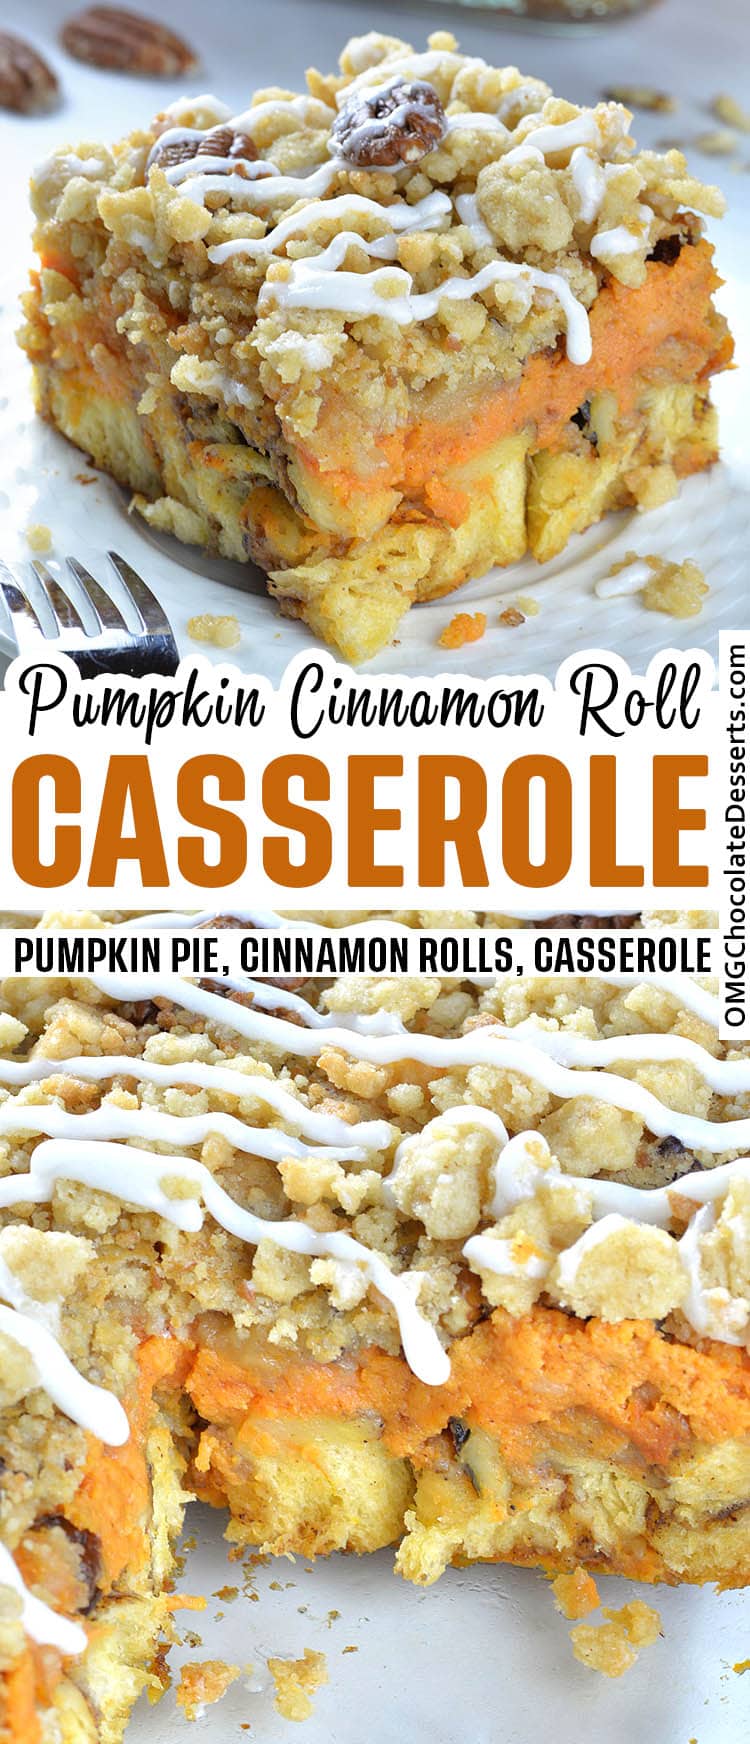 Pumpkin Pie Cinnamon Roll Casserole